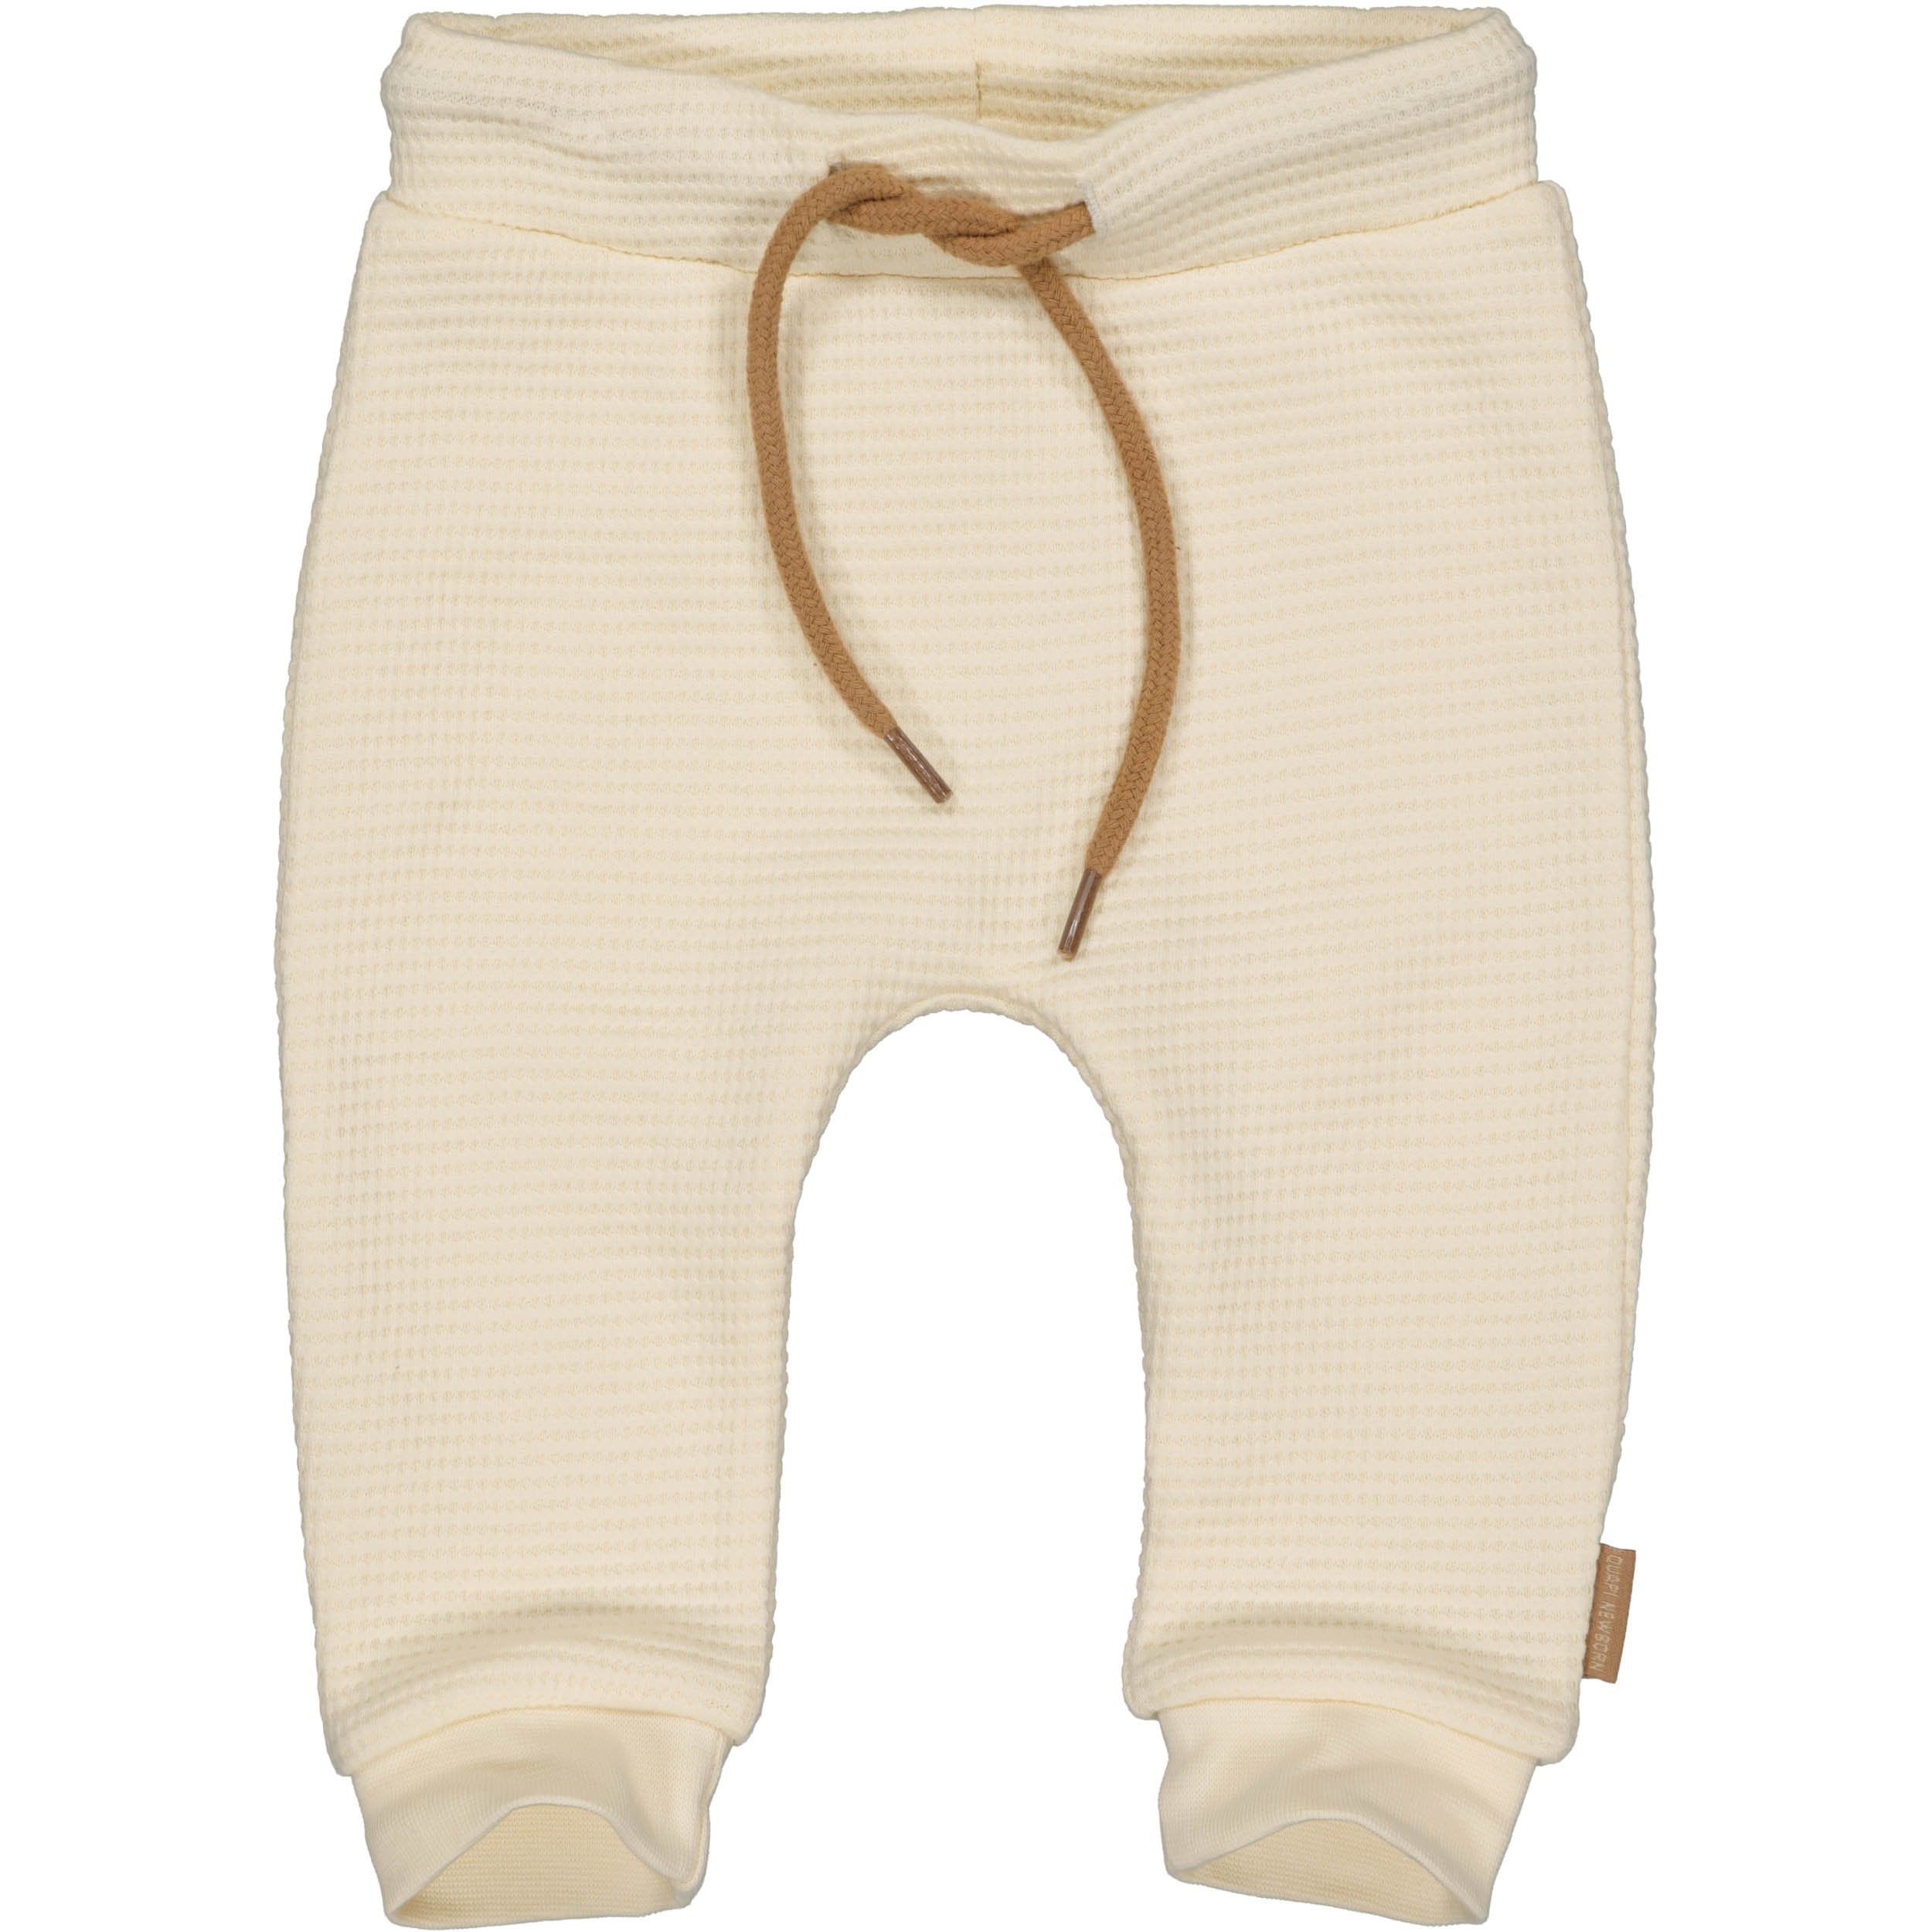 Unisexs Pants MARIJN NBW21 van Quapi Newborn in de kleur Off White in maat 68.